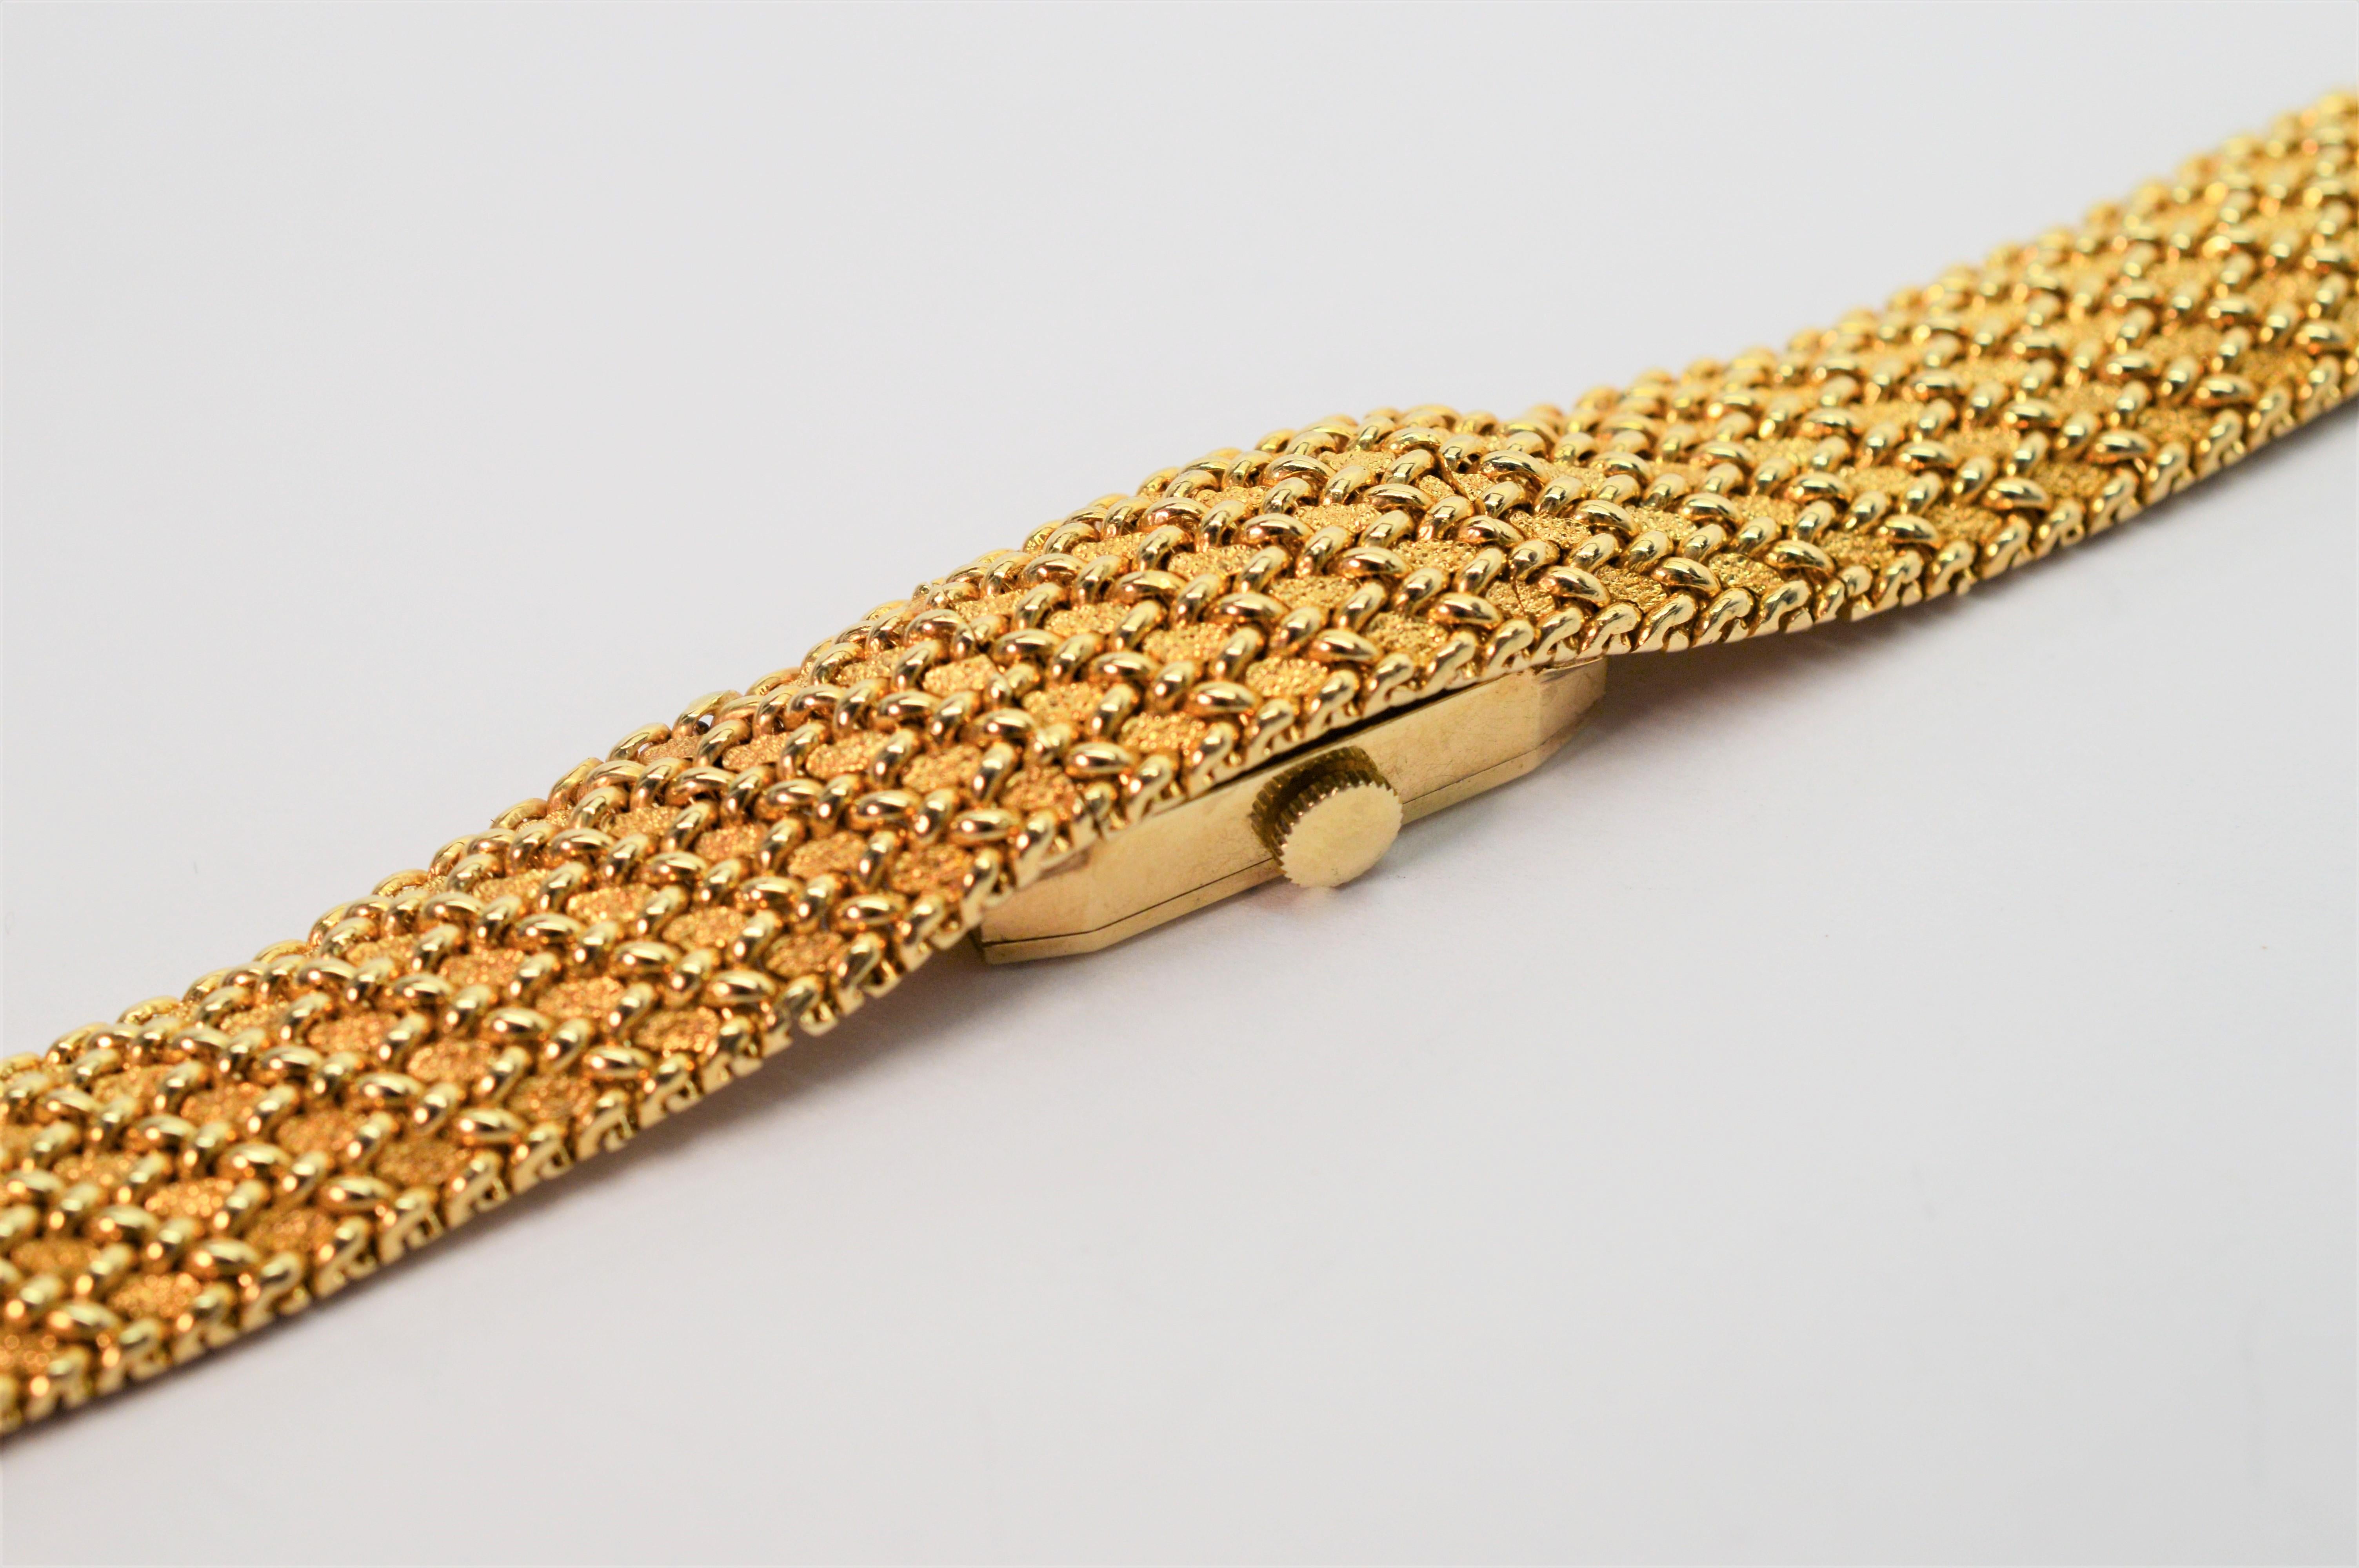 Tragen Sie die Zeit mit wahrer Eleganz. Ein fein gewebtes Goldnetzarmband aus vierzehn Karat Gelbgold ist ein elegantes Accessoire für jede Gelegenheit. In dieses elegante Armband ist eine versteckte Uhr des Schweizer Luxusuhrenherstellers Concord